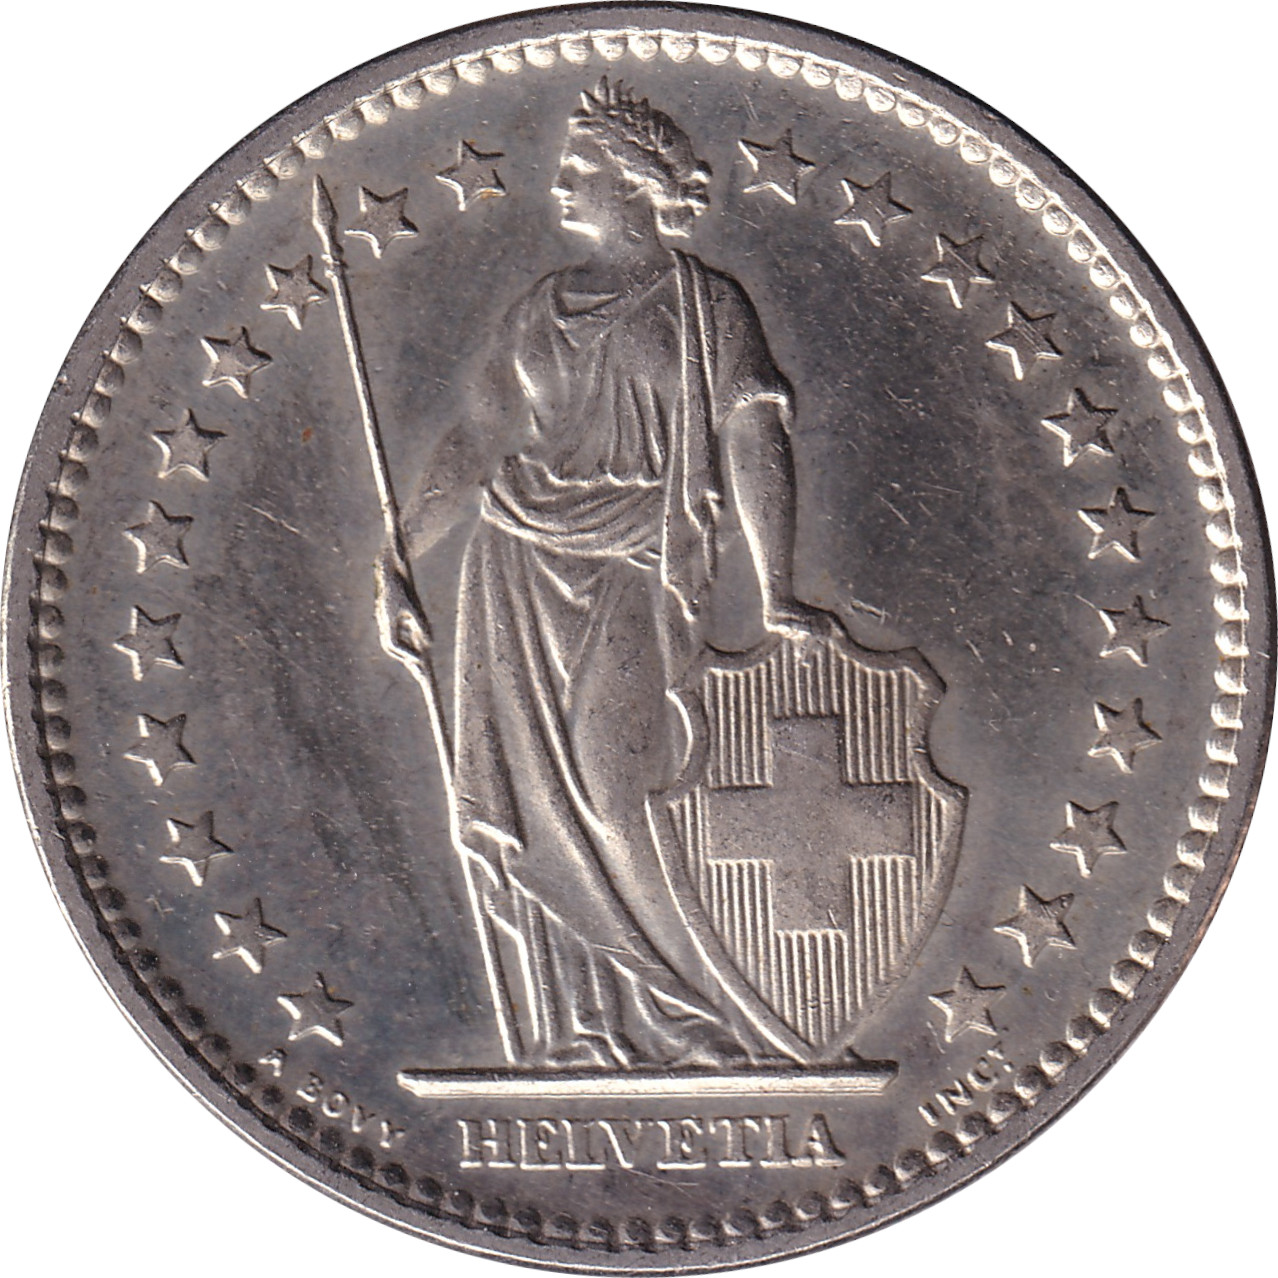 2 francs - Helvetia debout